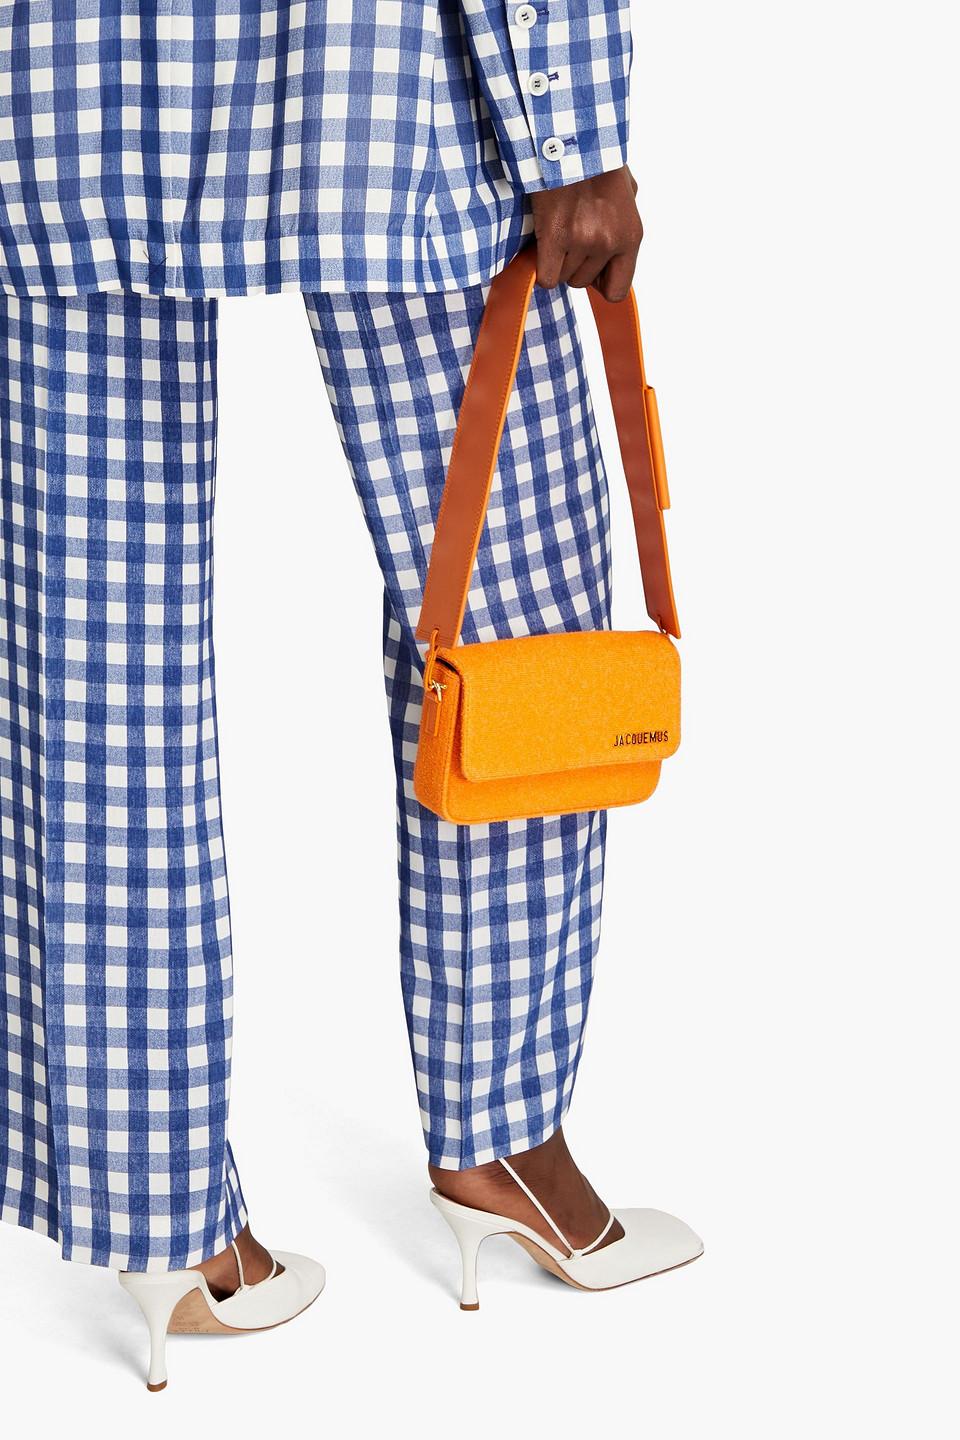 Jacquemus Le Carinu Bouclé Shoulder Bag in Orange | Lyst